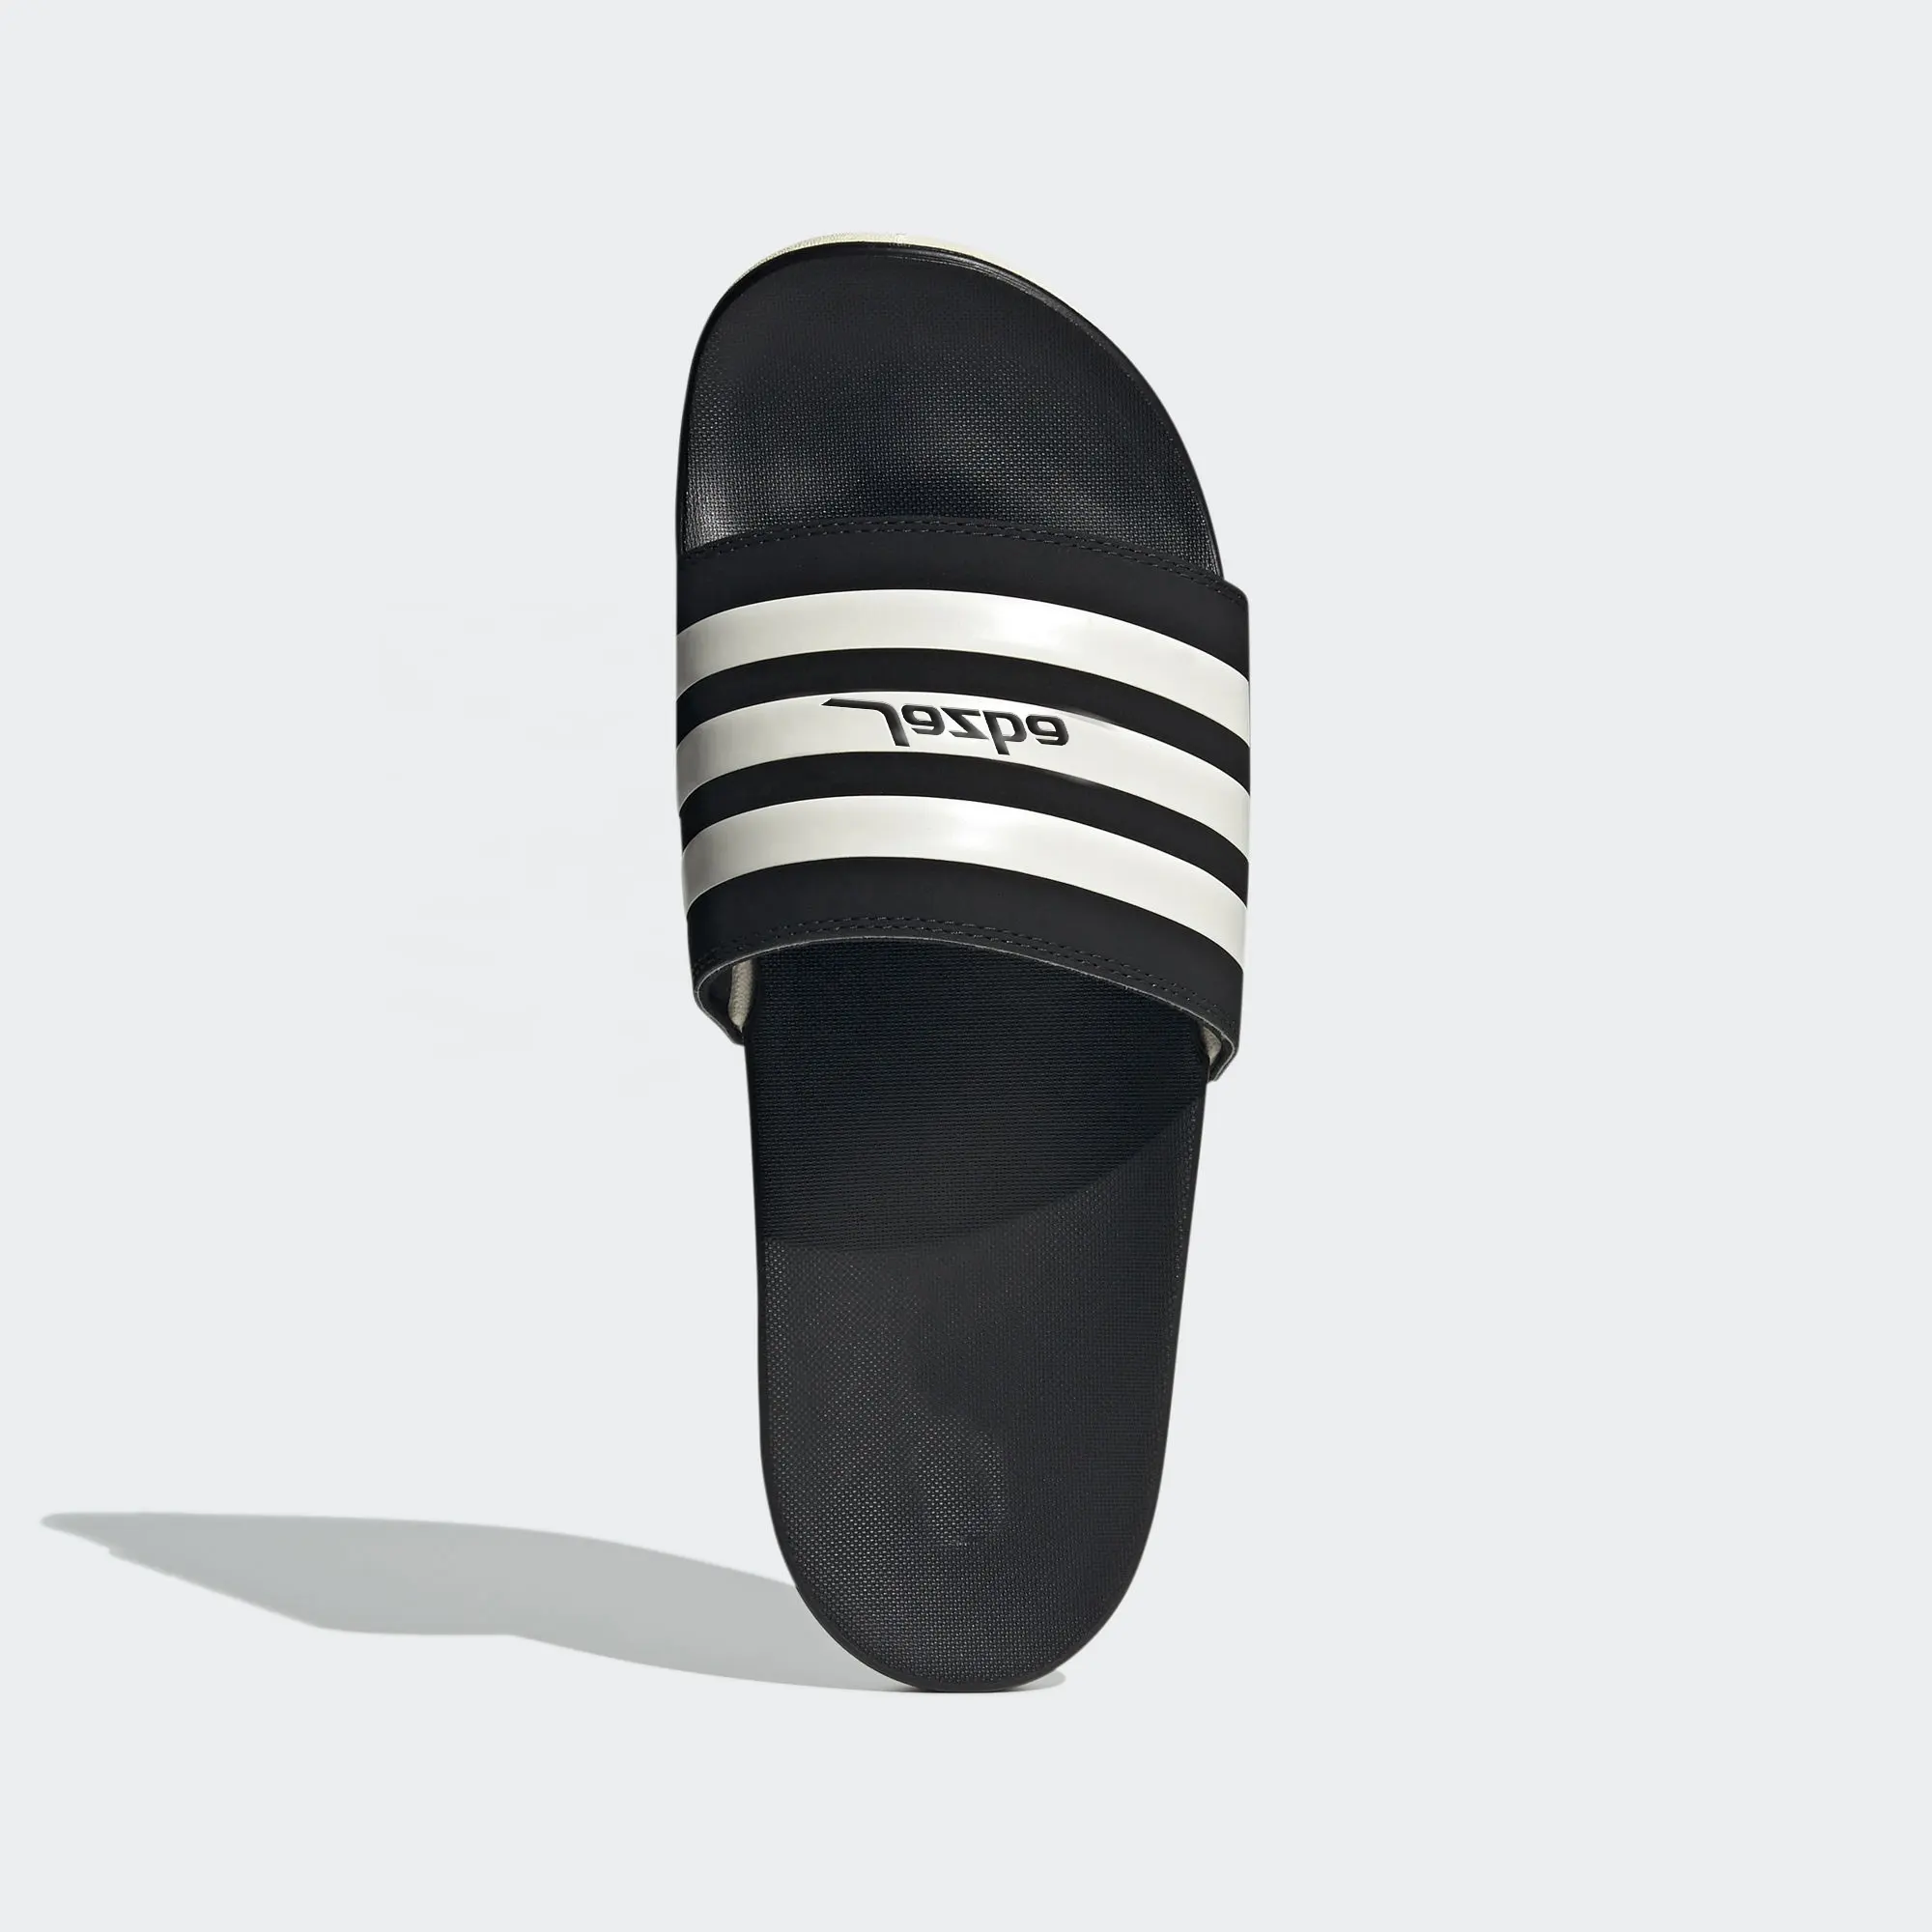 OEM/ODM SMD mens scivola nuovo design di vendita calda pantofole di gomma all'ingrosso scarpe materiale